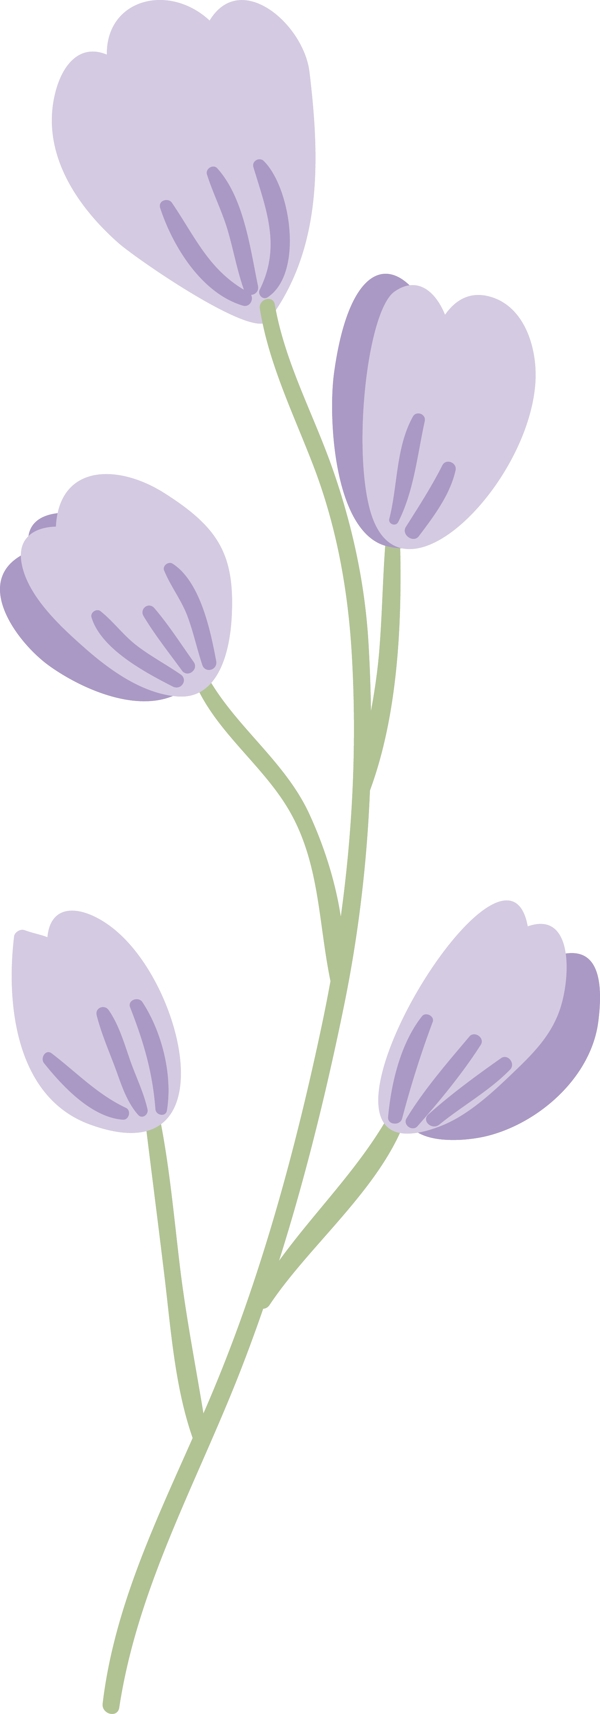 紫色花瓣矢量素材